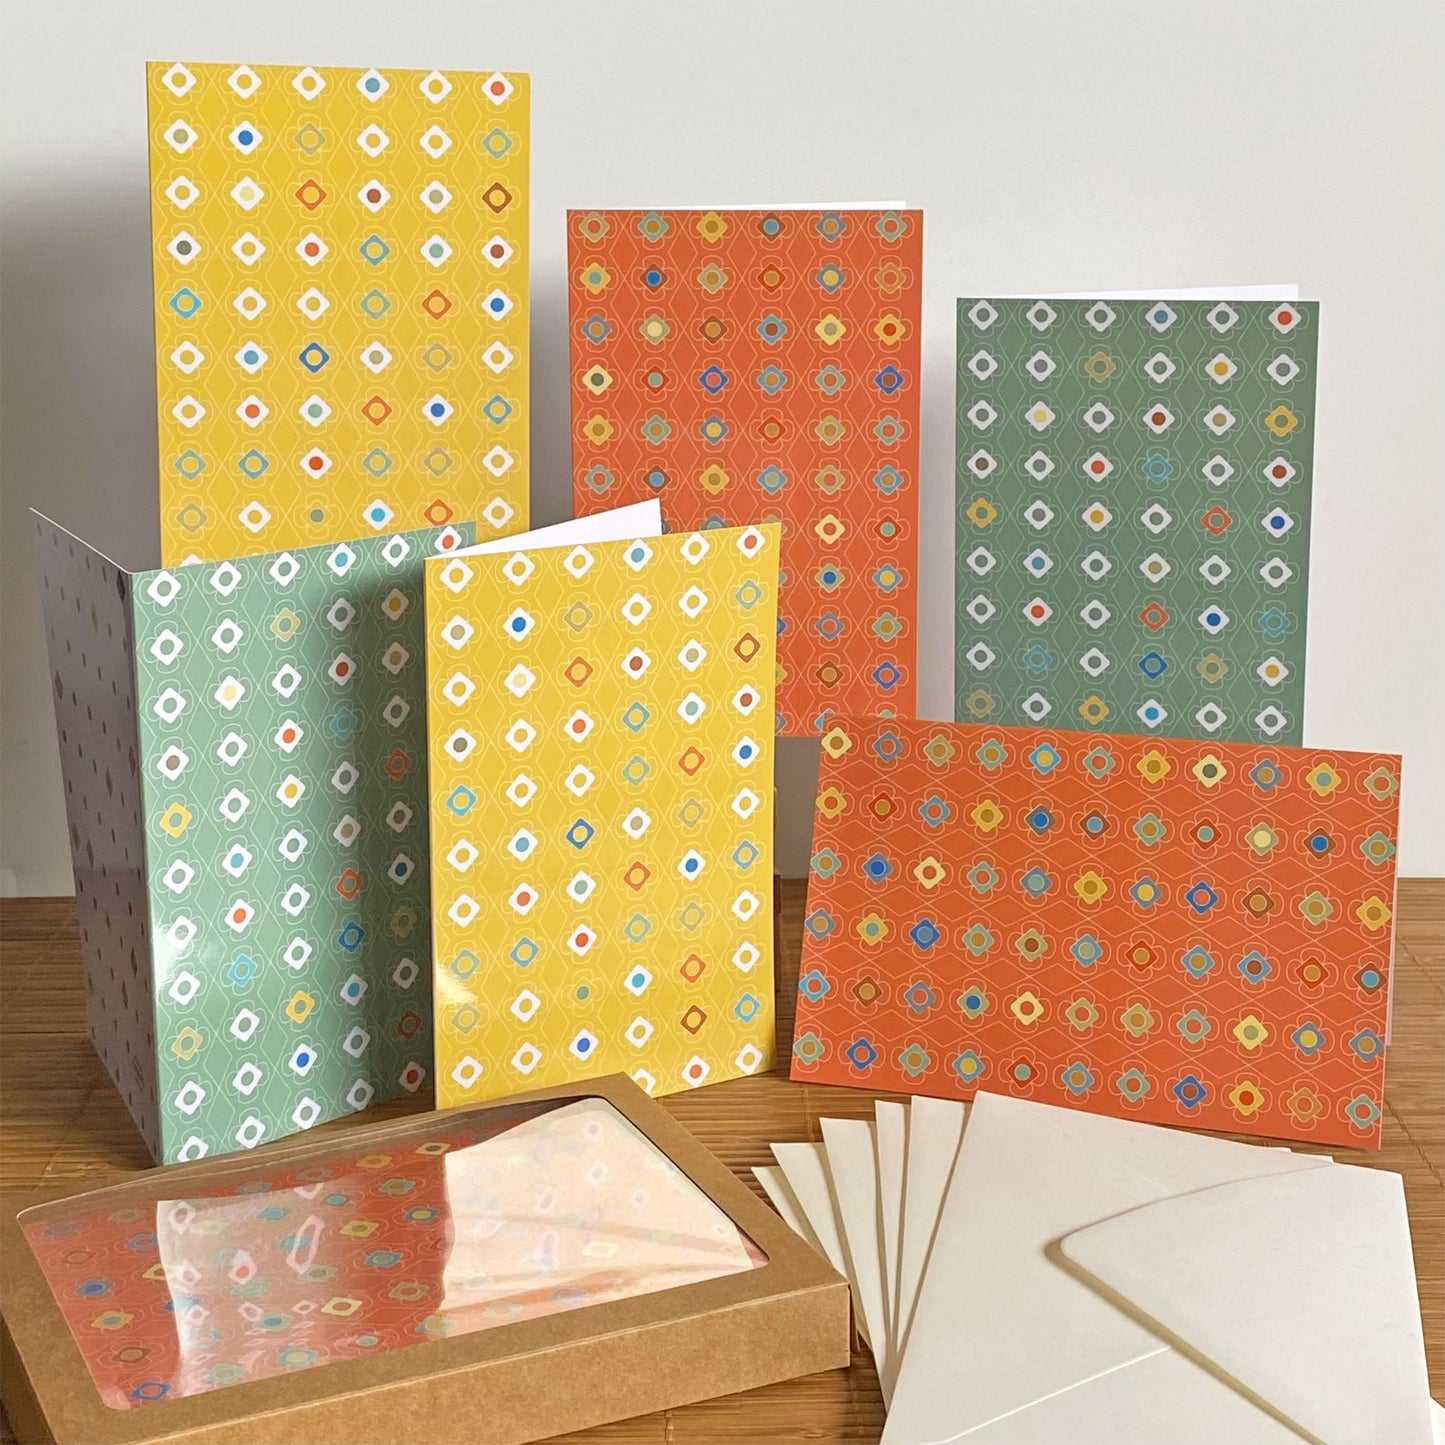 Productafbeelding, foto wenskaarten set 'kleur carrousel' 6 stuks, een presentatie van alle kaarten met de enveloppen en het verpakkingsdoosje